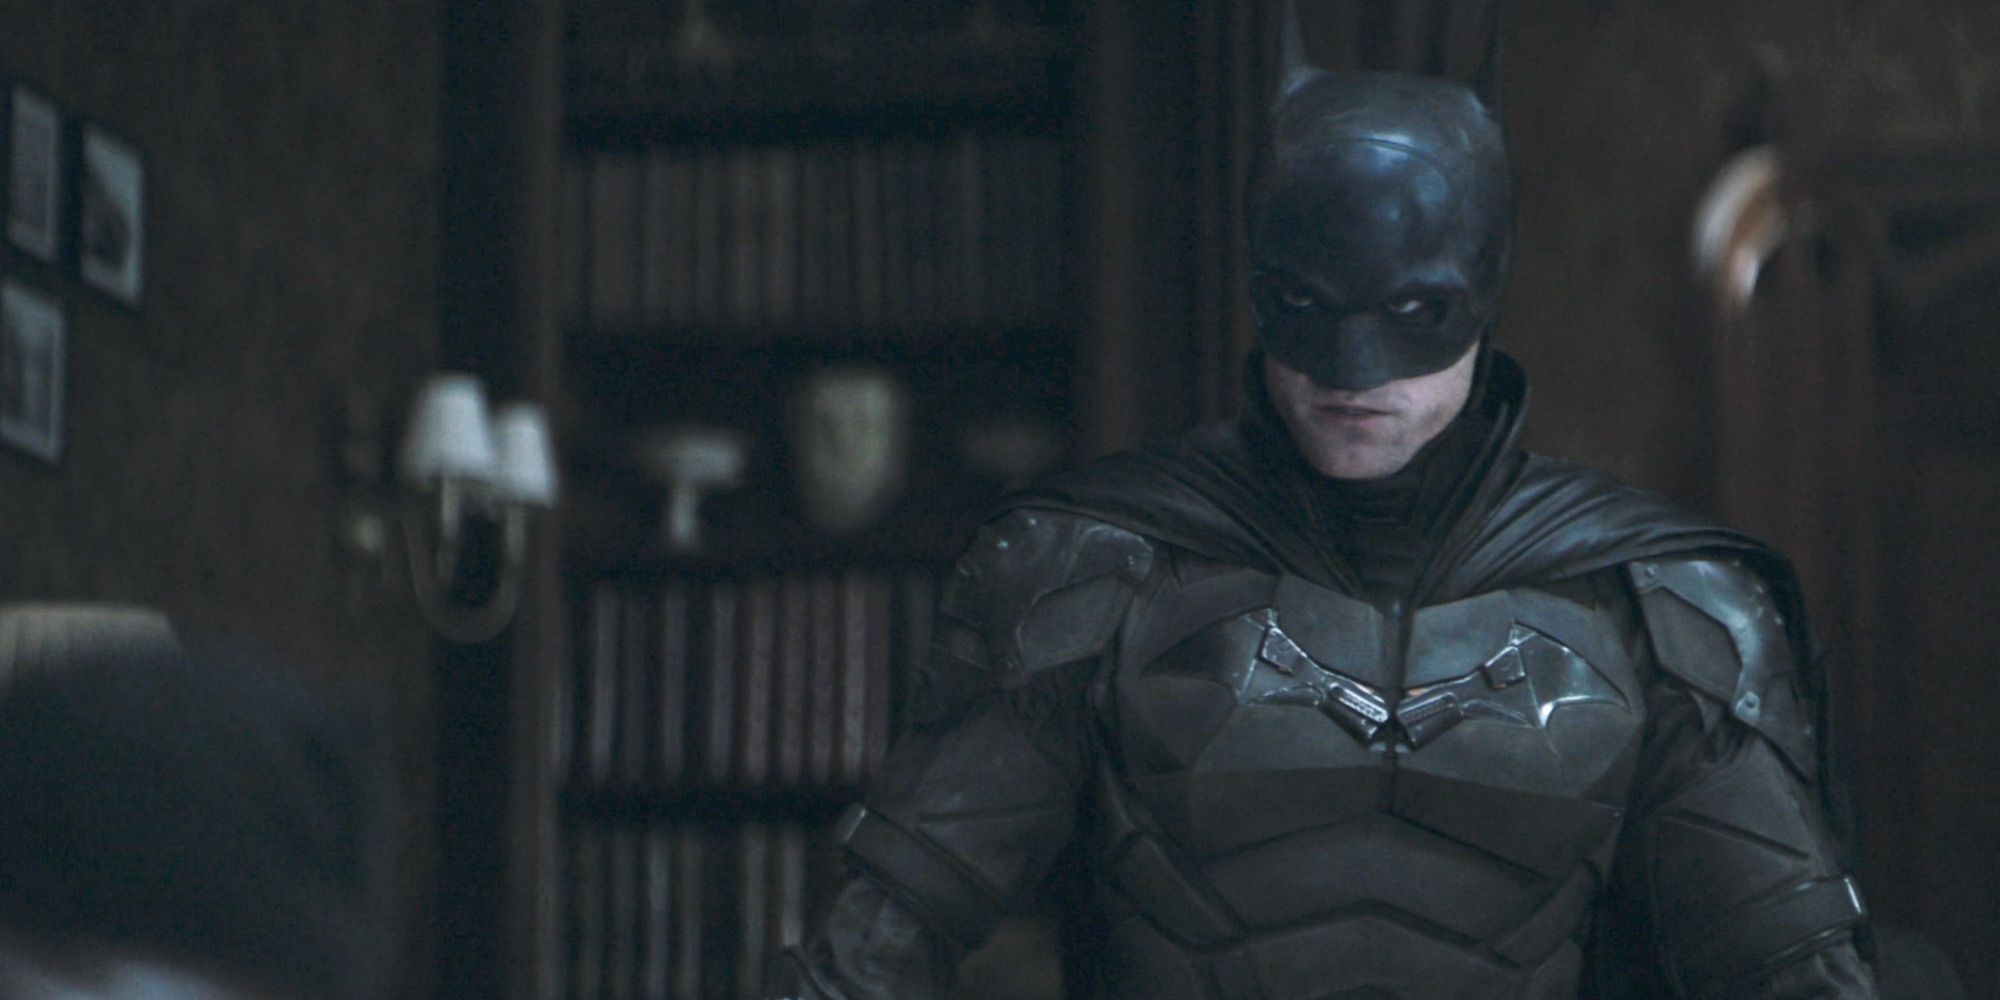 Batman standing in front of bookshelf in dark room